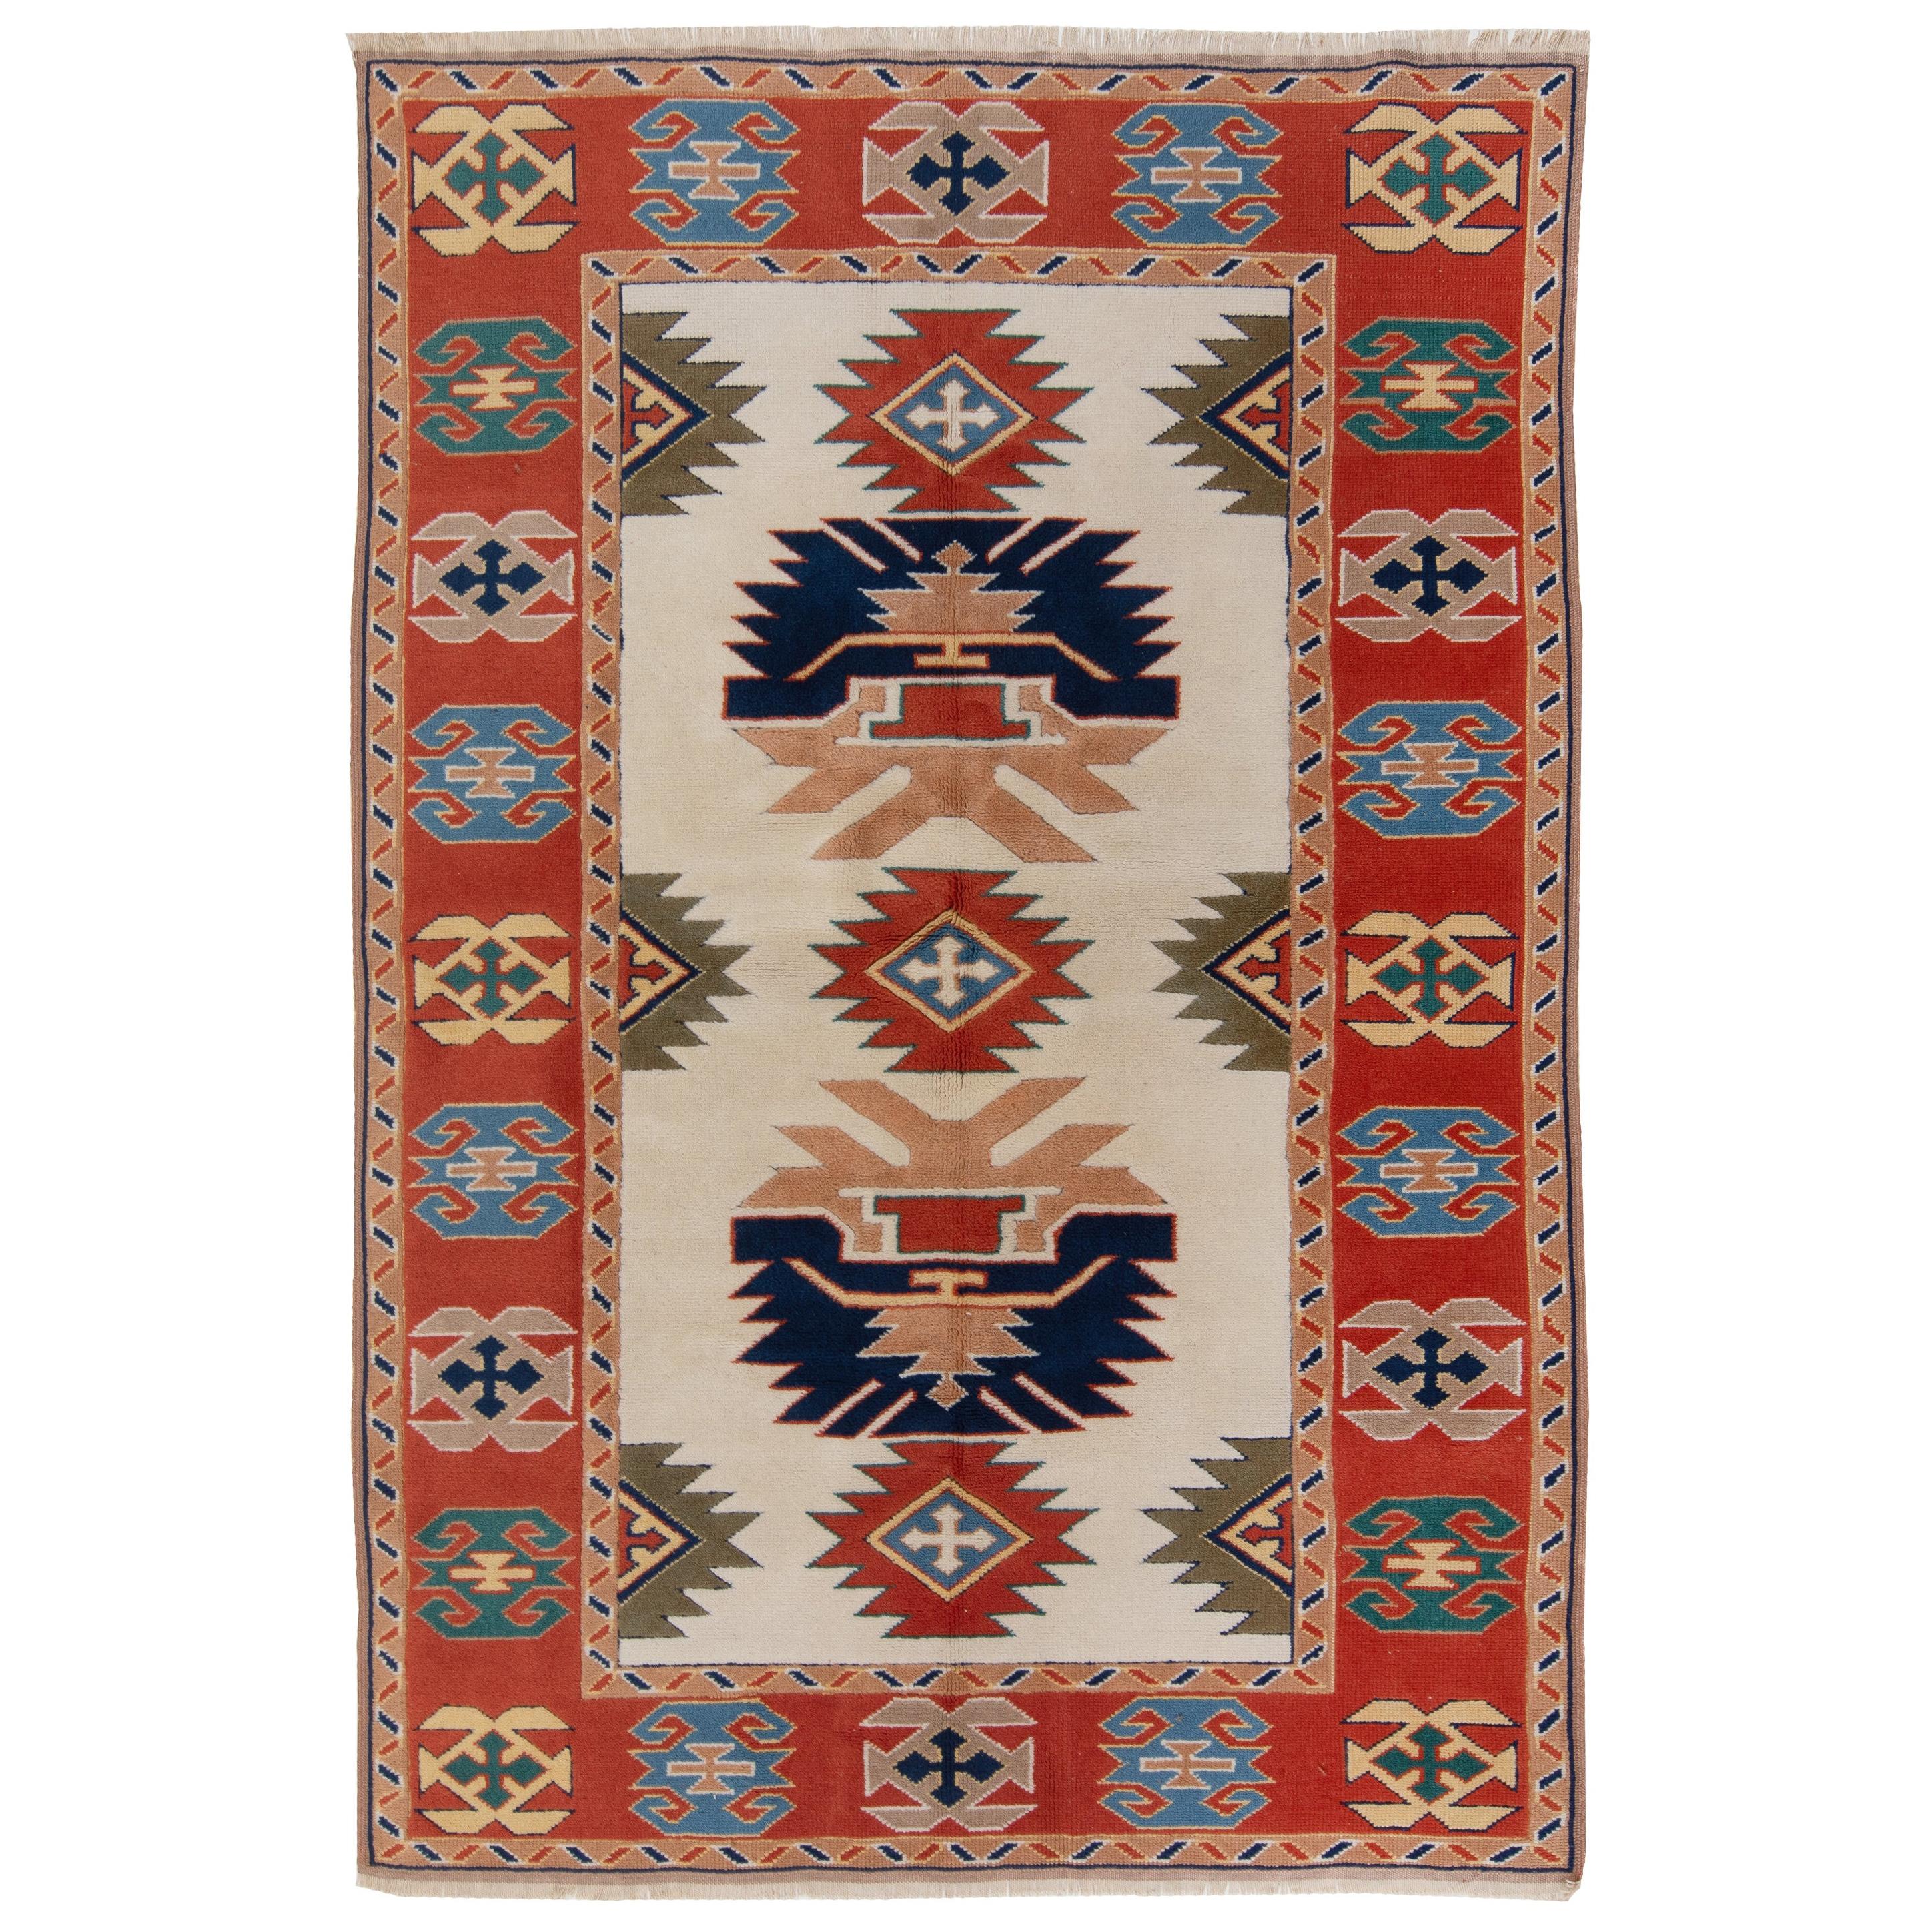 5.3x7.4 Ft Feiner handgeknüpfter Anatolischer Vintage-Teppich mit allen natürlichen Farbstoffen